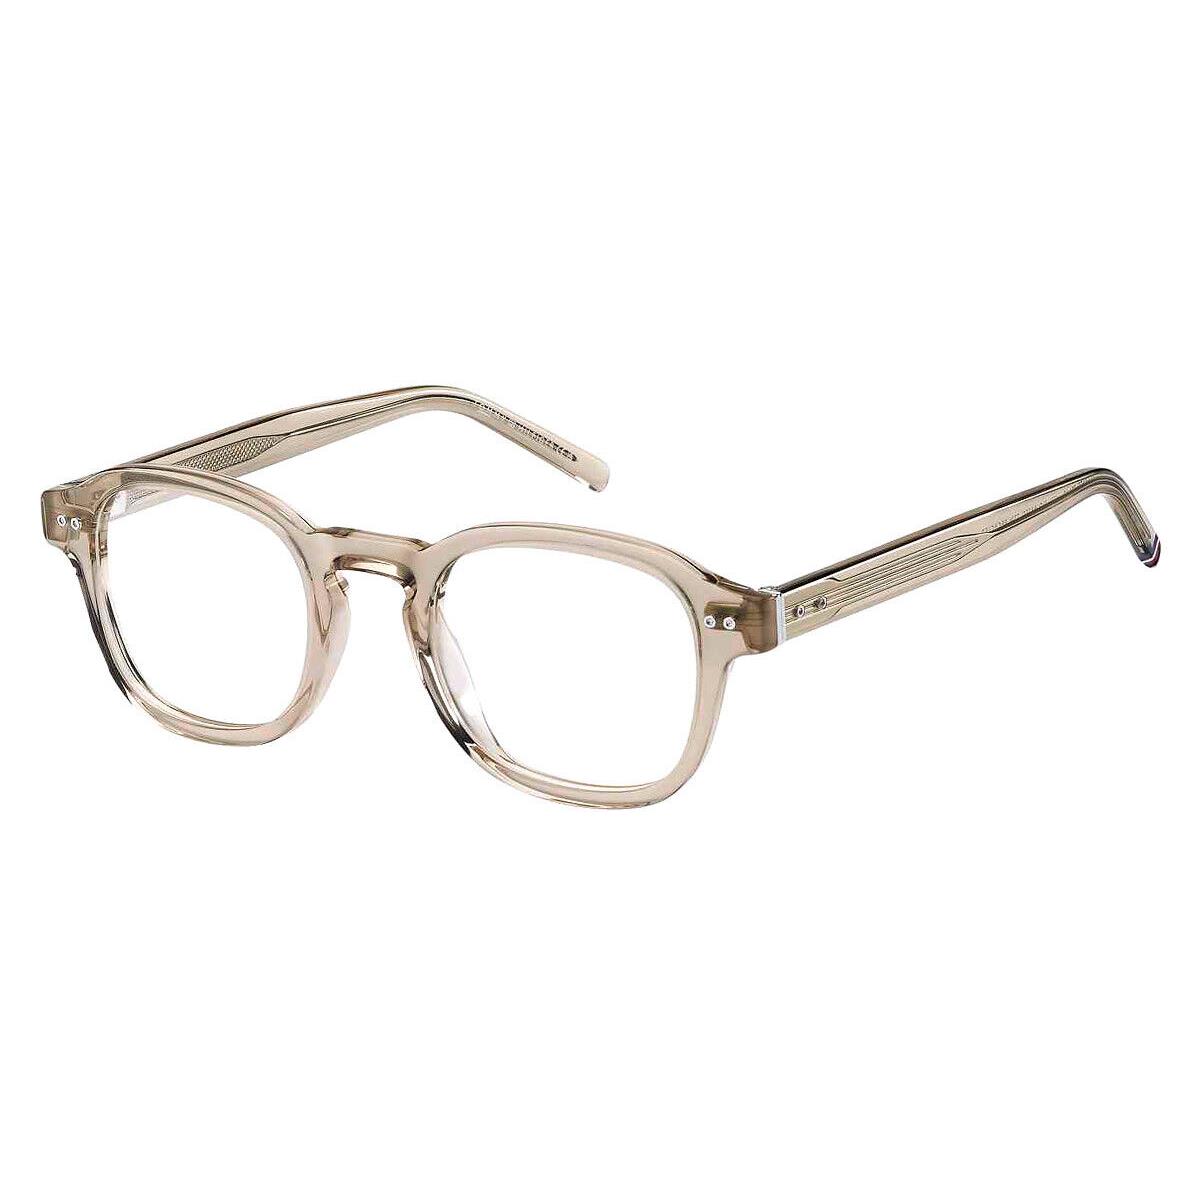 Tommy Hilfiger Thf Eyeglasses Men Beige 48mm - Frame: Beige, Lens: Demo